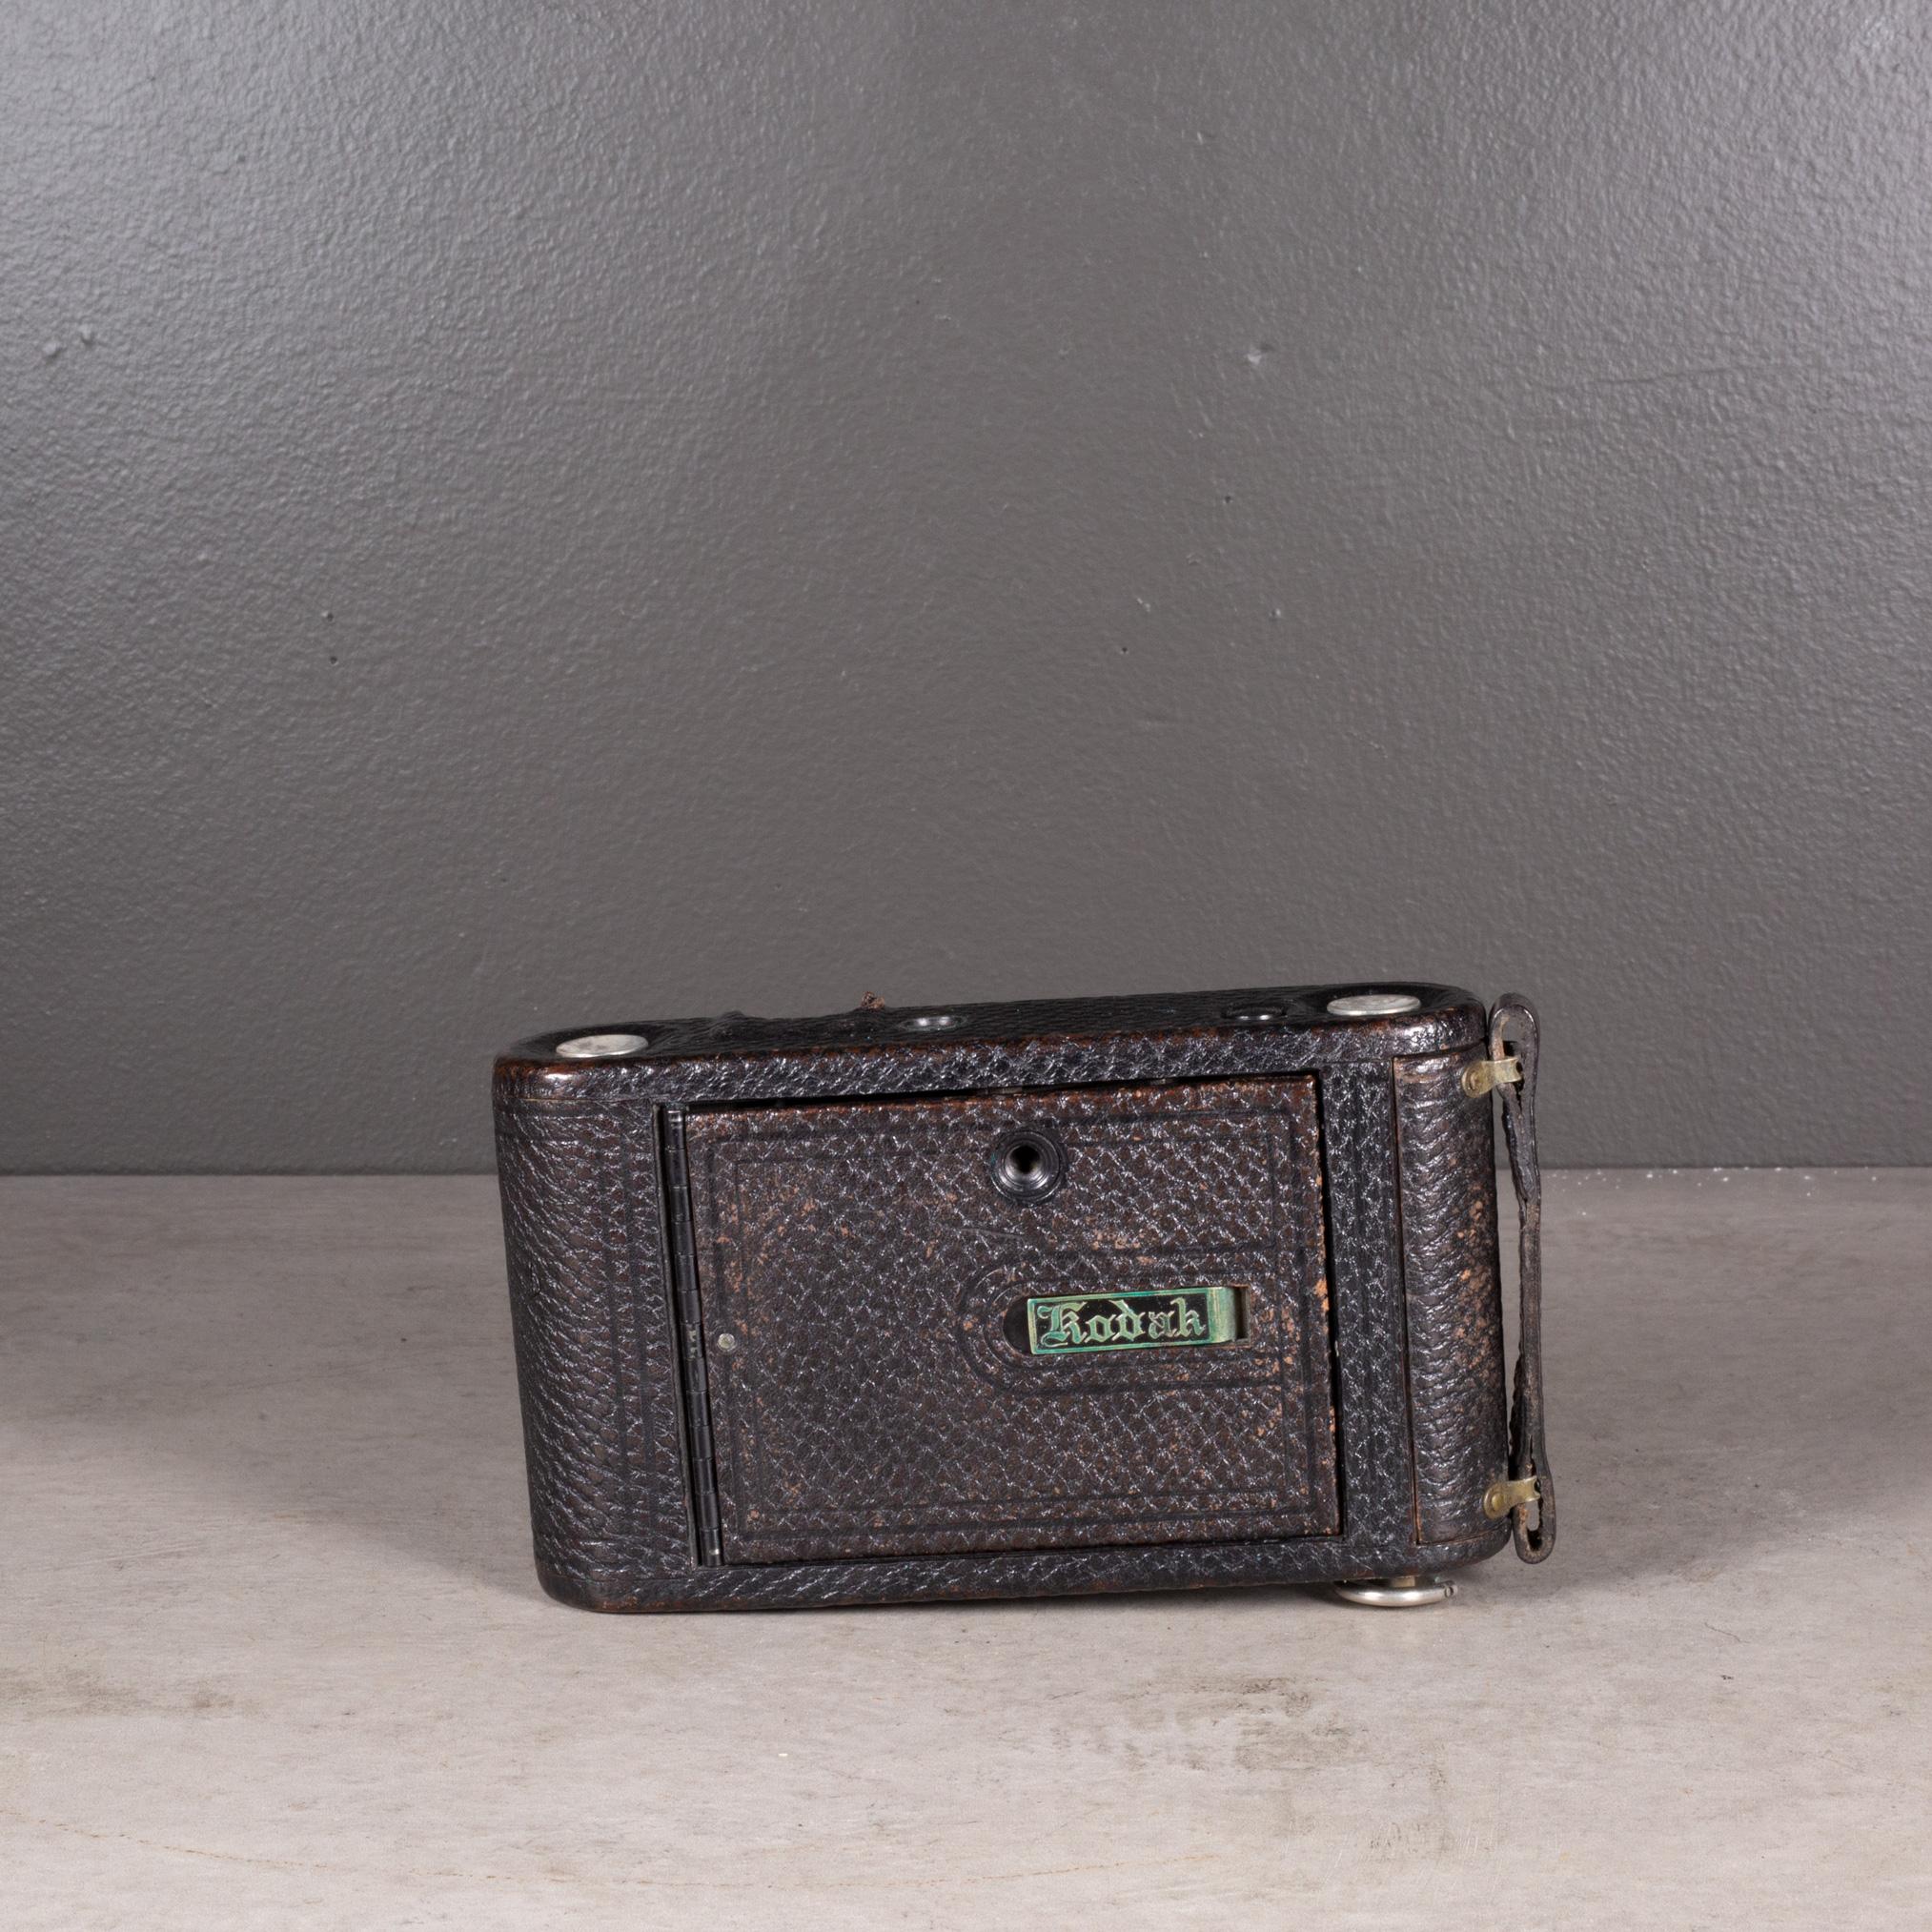 Camera pliante Kodak Junior n° 1,1914-1927 avec étui (expédition gratuite) en vente 1